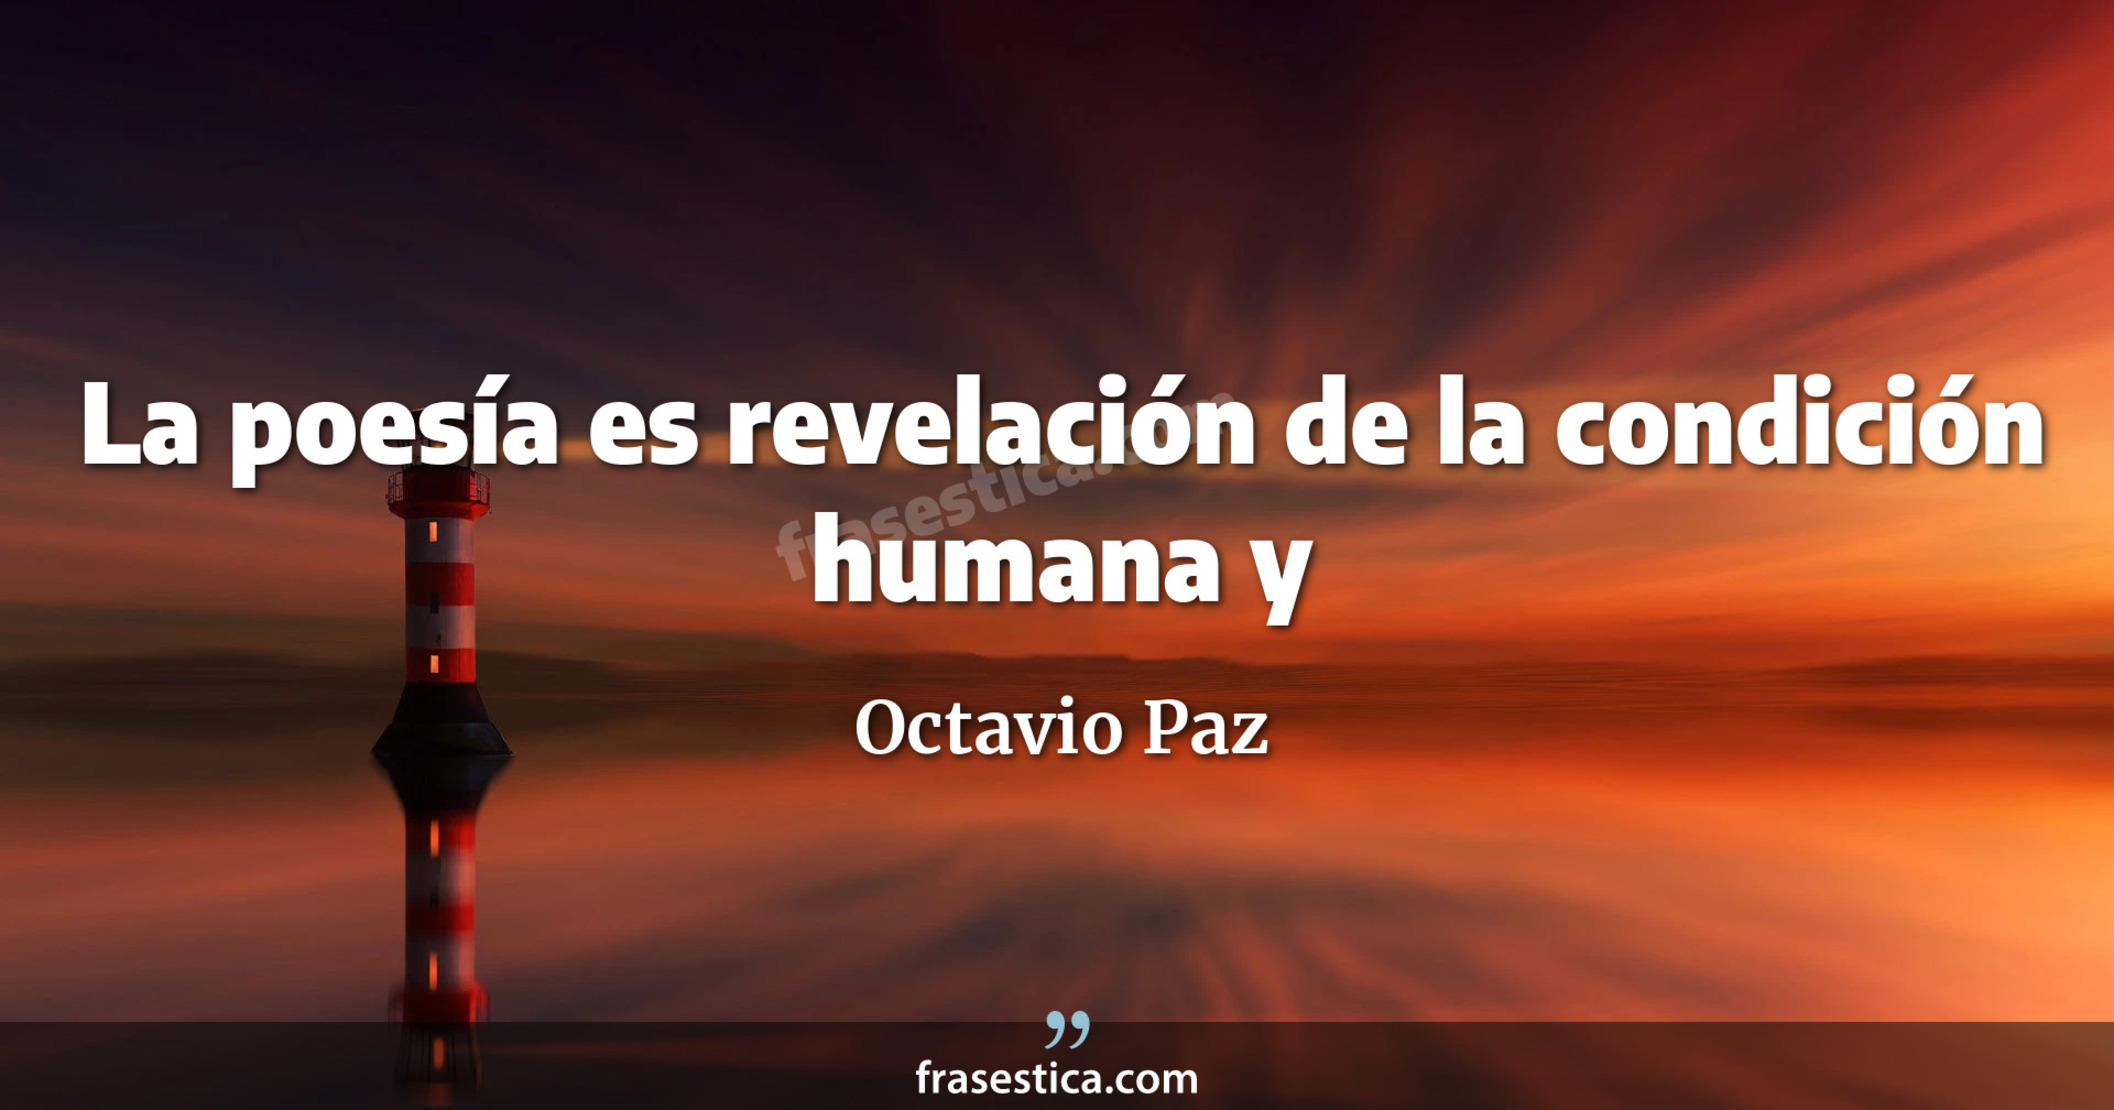 La poesía es revelación de la condición humana y
     - Octavio Paz